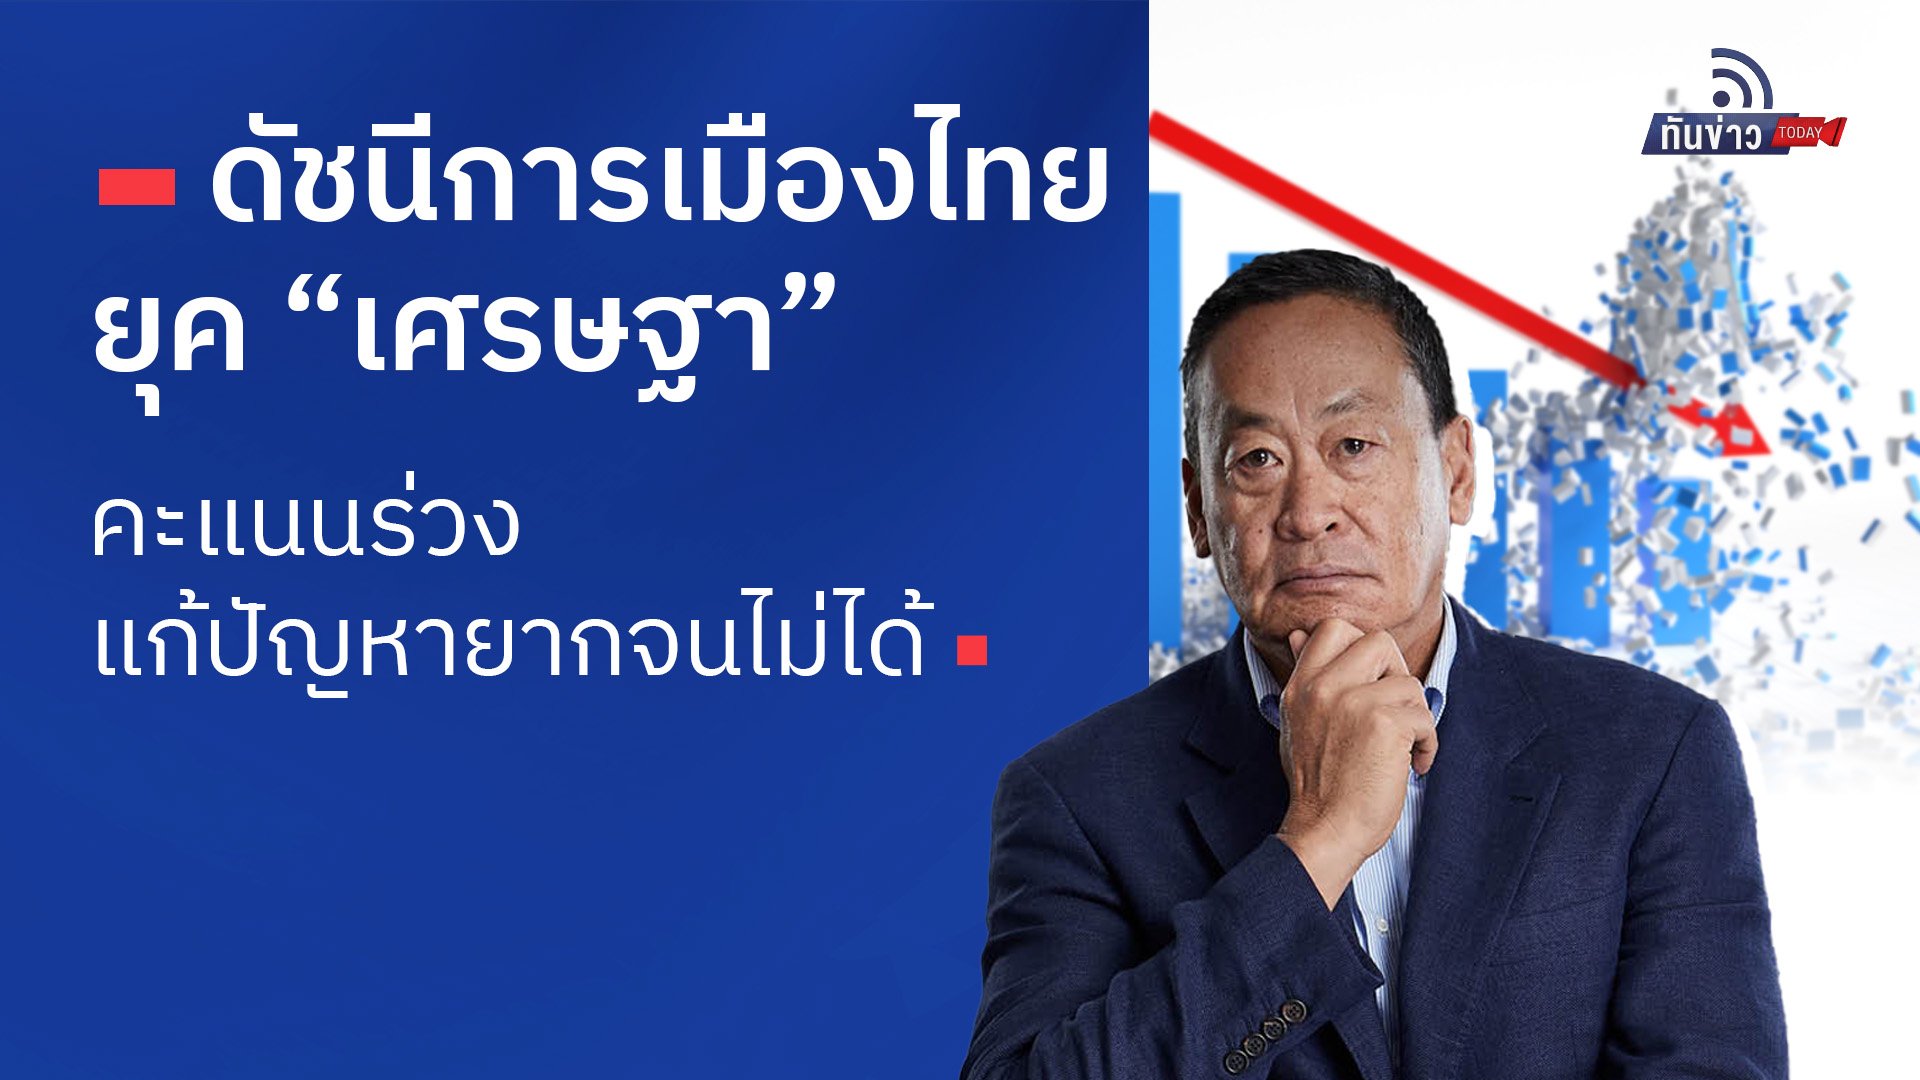 “ดัชนีการเมืองไทยยุค “เศรษฐา” คะแนนร่วง แก้ปัญหายากจนไม่ได้